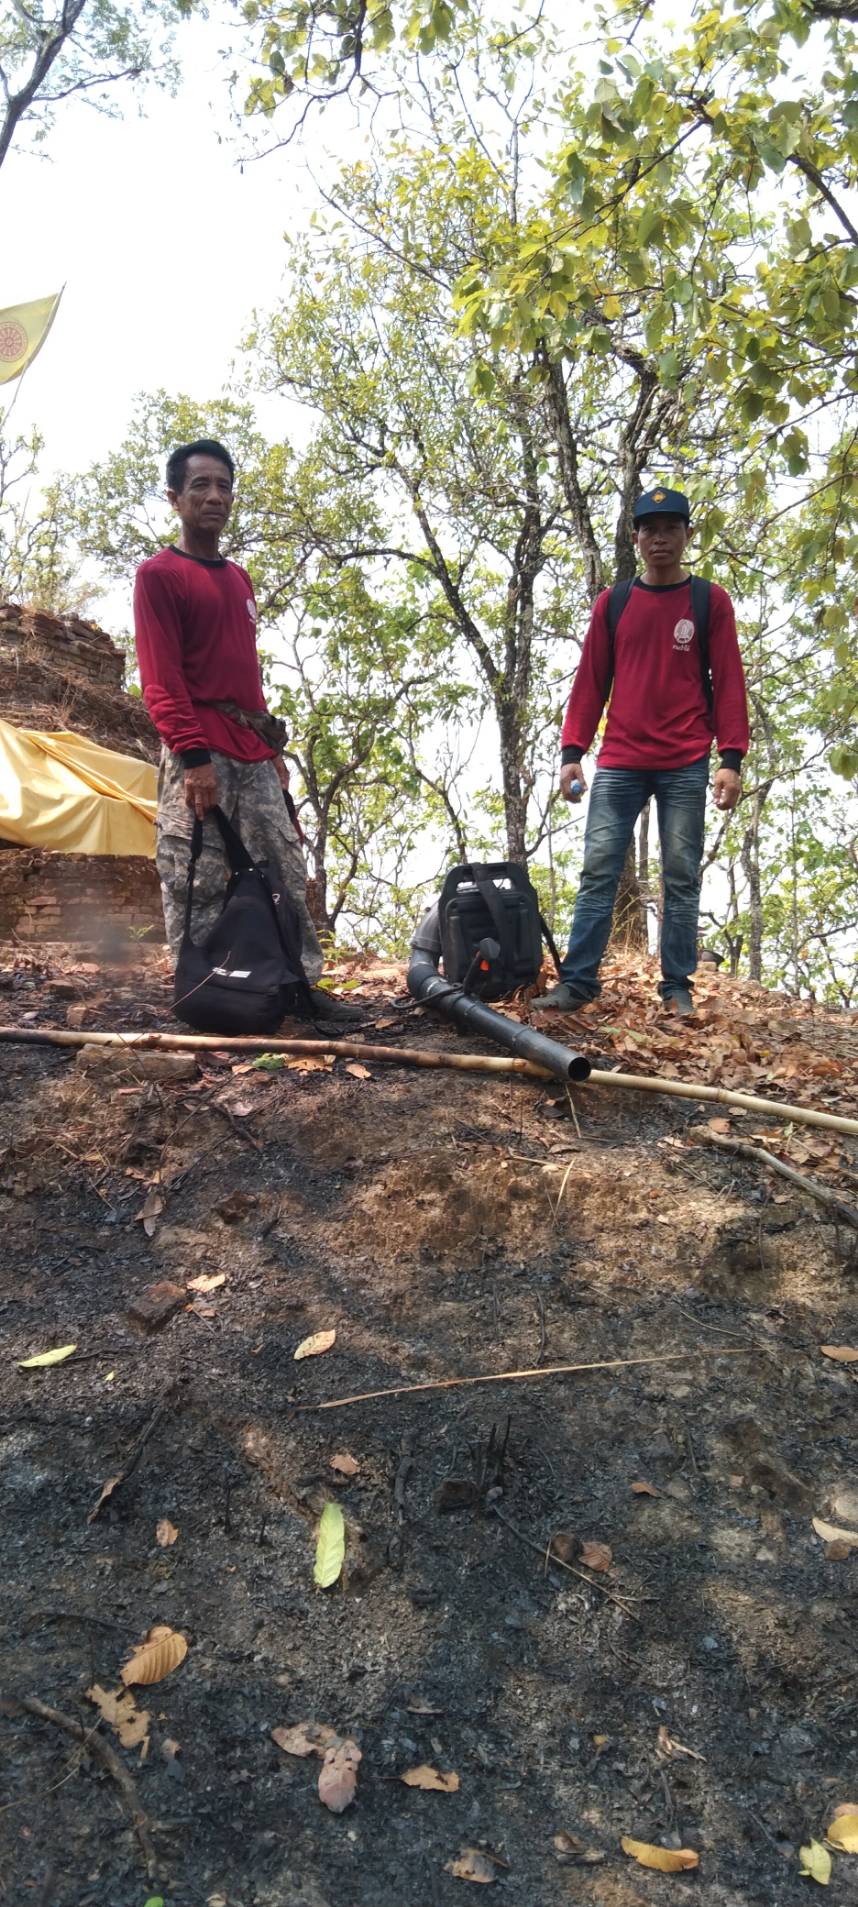 ศูนย์อำนวยการป้องการไฟป่าฯอำเภอเชียงของ จัดชุดลาดตระเวนเฝ้าระวังไฟป่าในหมู่บ้านที่มีความเสี่ยงสูง